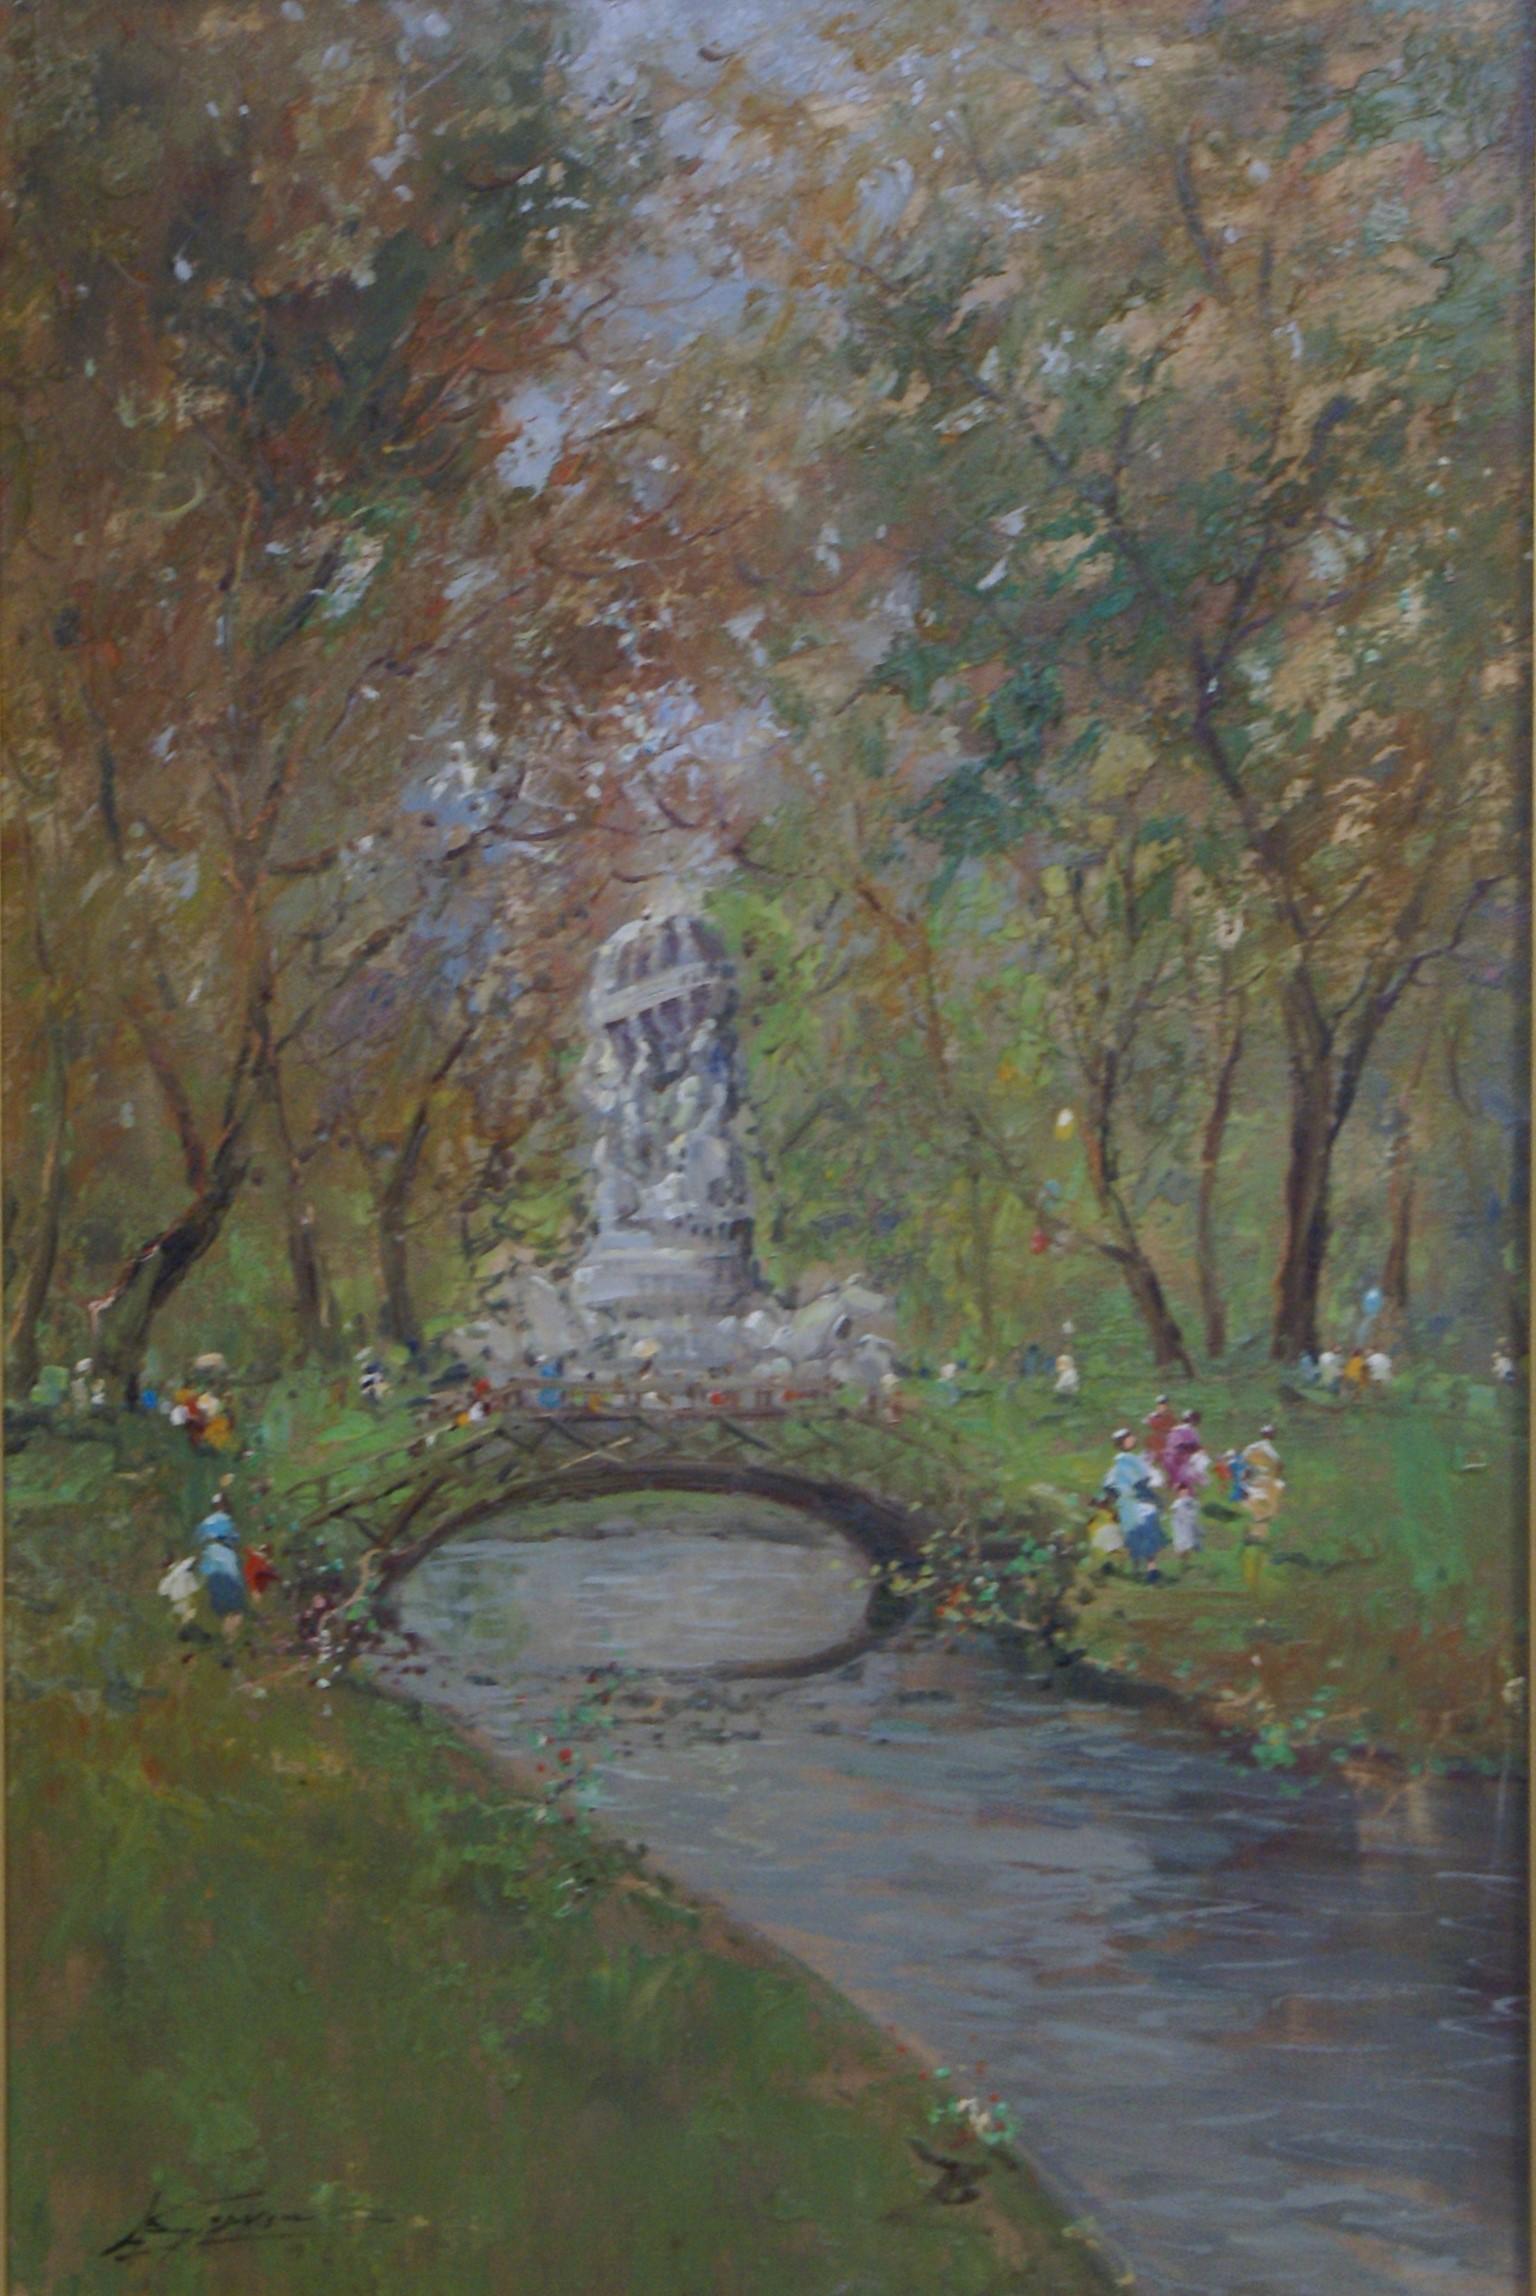 Parco (Park) - Painting by Antonio Gravina